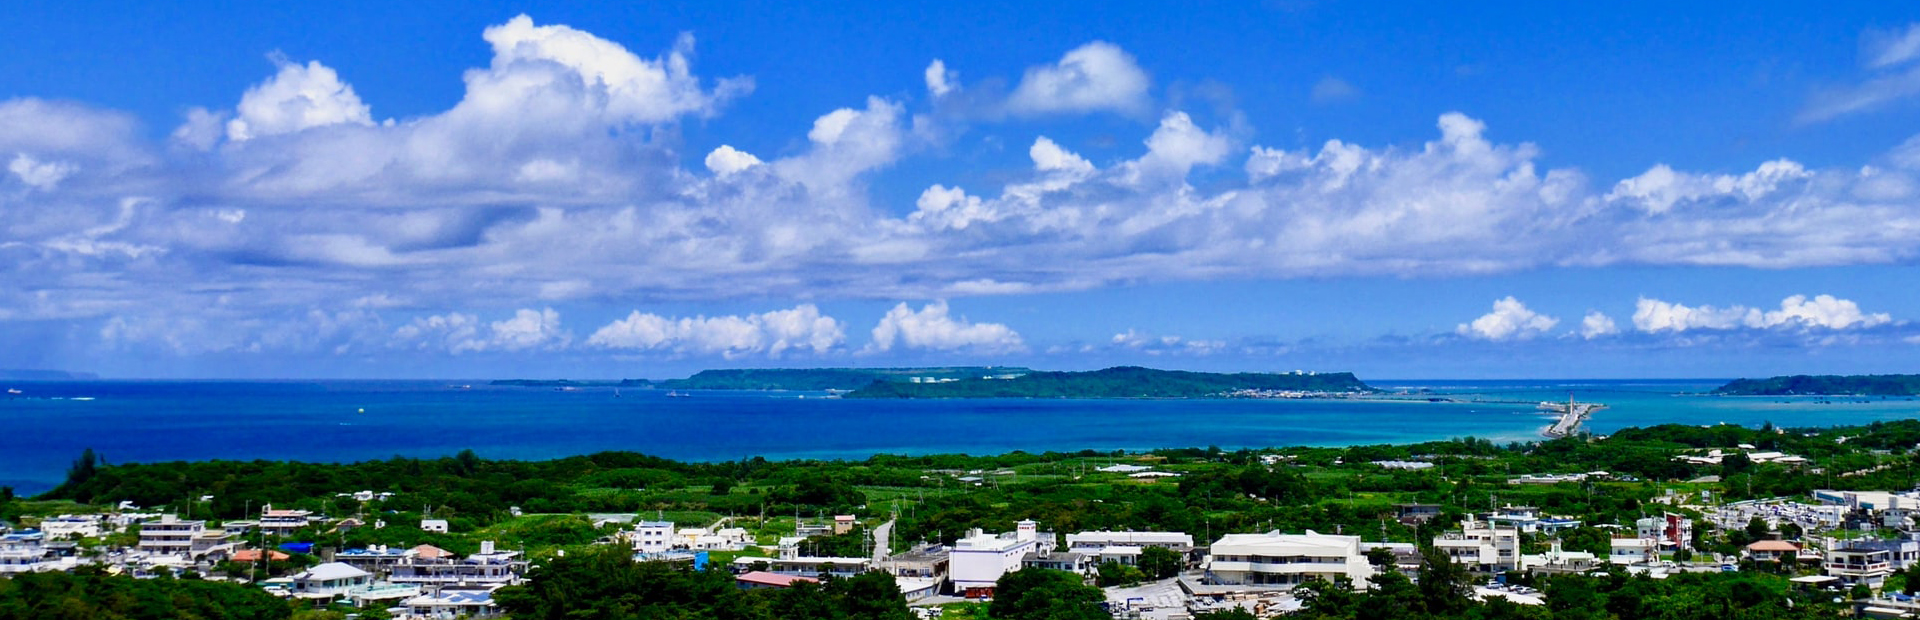 Okinawa_hiroko-yoshii-qbl9o0iU4X8-unsplash copy